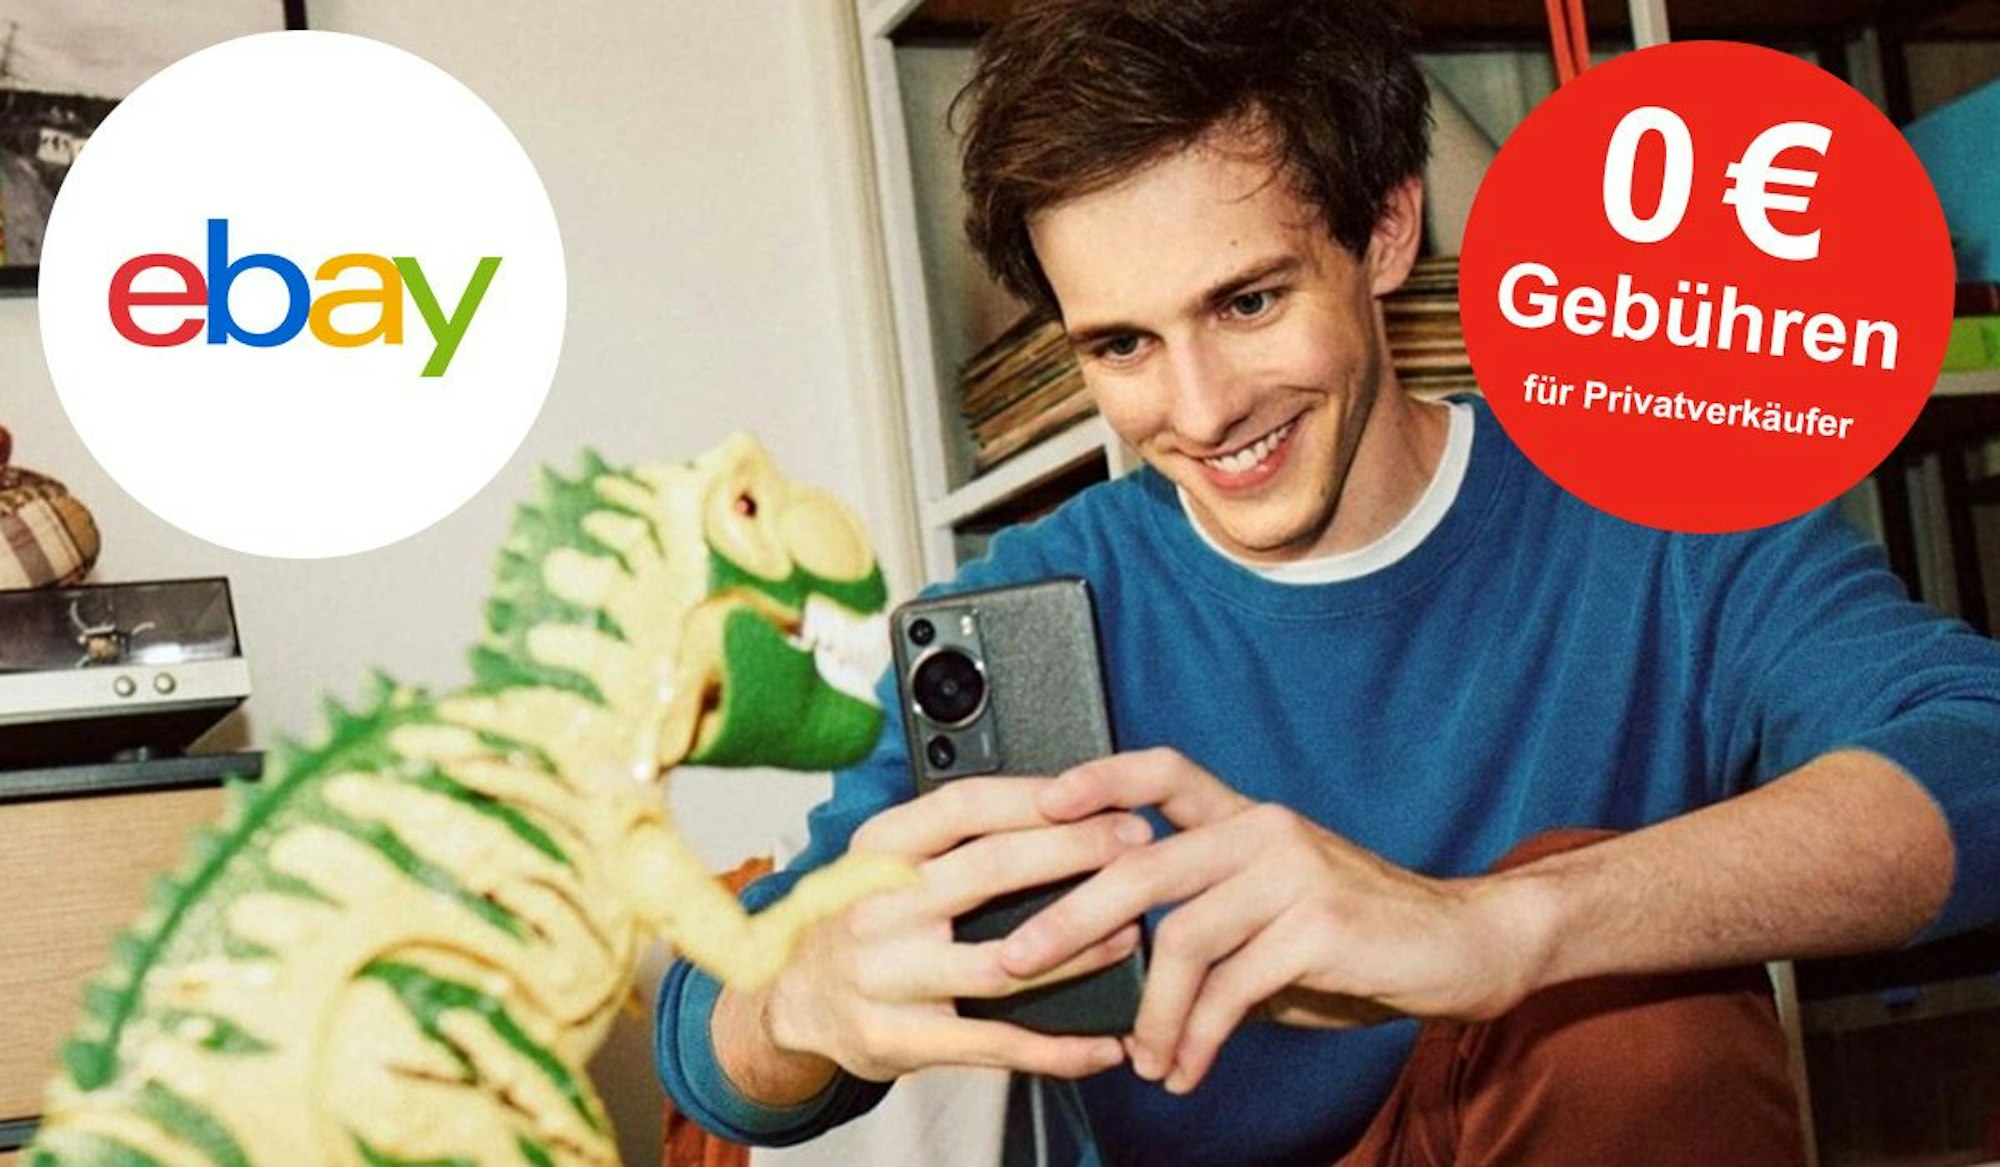 Junger Mann schießt mit dem Smartphone ein Bild von einem Spielzeug-Dinosaurier. Ebay Logo auf Bild.